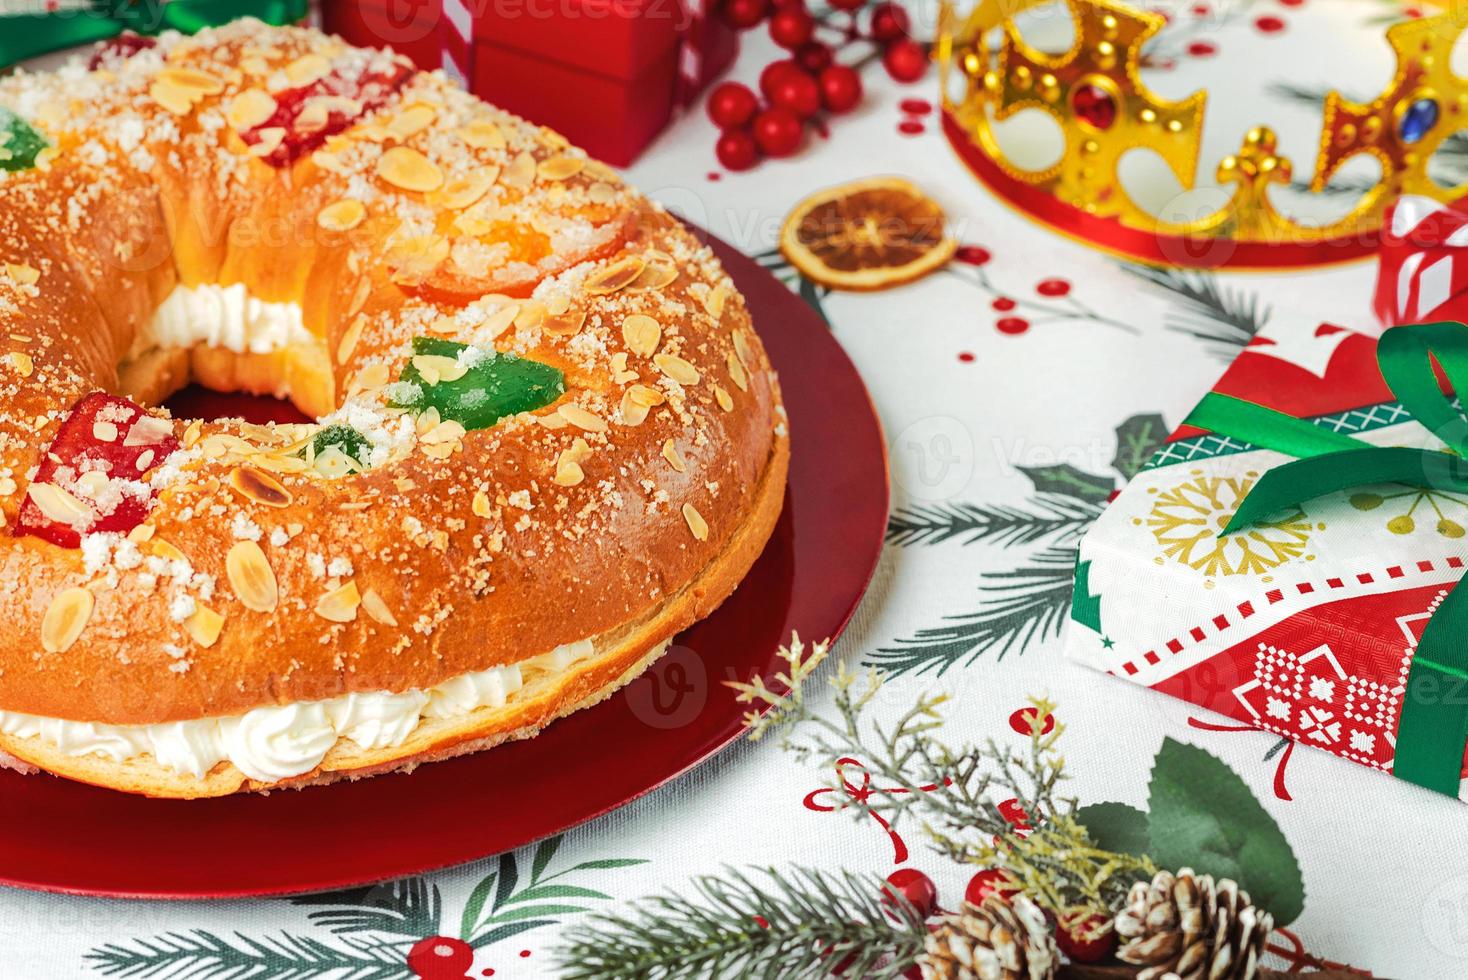 roscon de reyes mit creme und weihnachtsschmuck auf einem roten teller. königstag konzept spanischer dreikönigskuchen.typisches spanisches dessert zu weihnachten foto